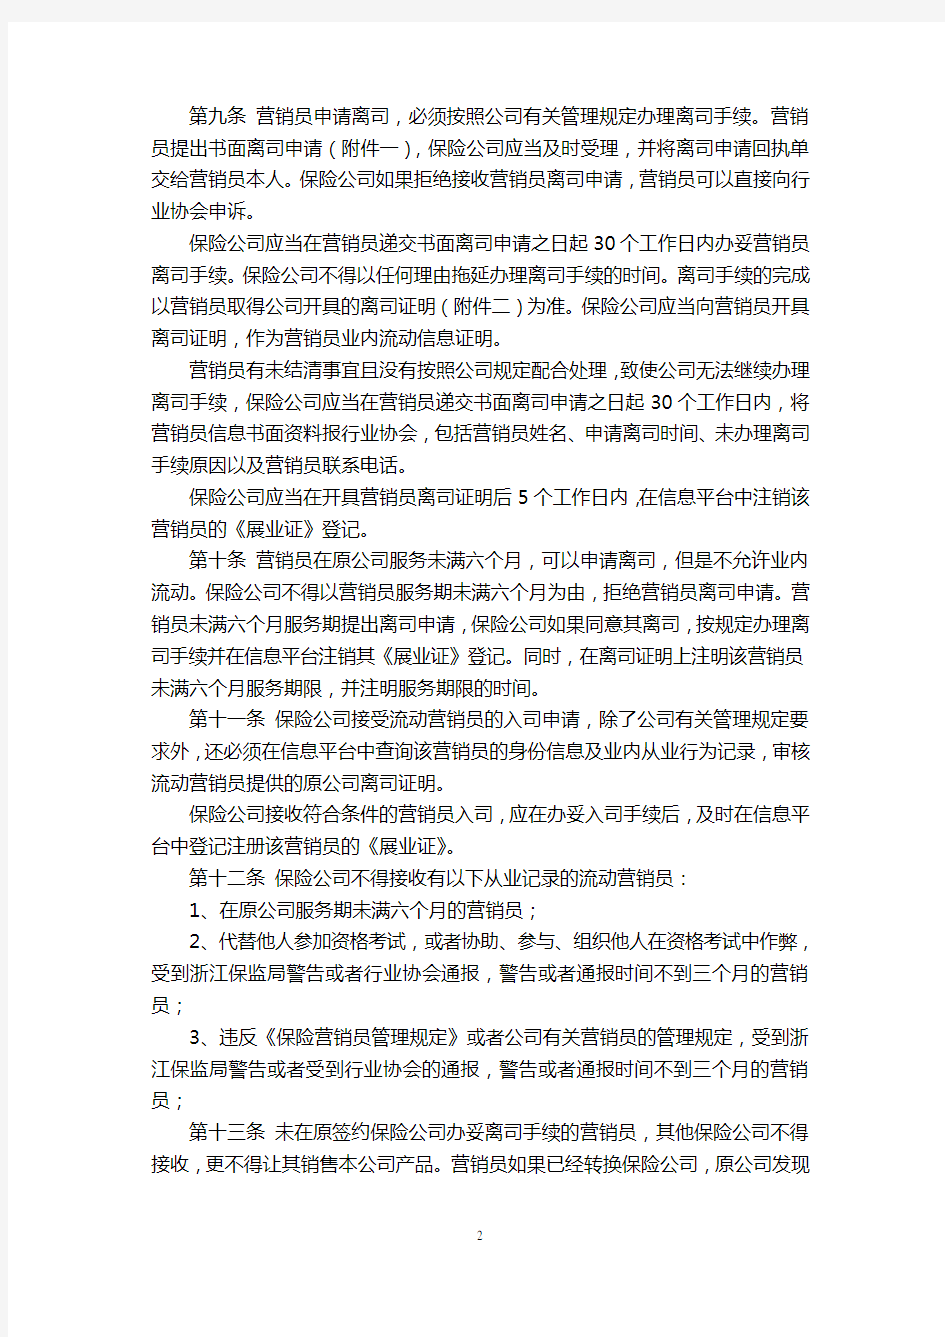 浙江省保险营销员业内流动管理自律公约7页